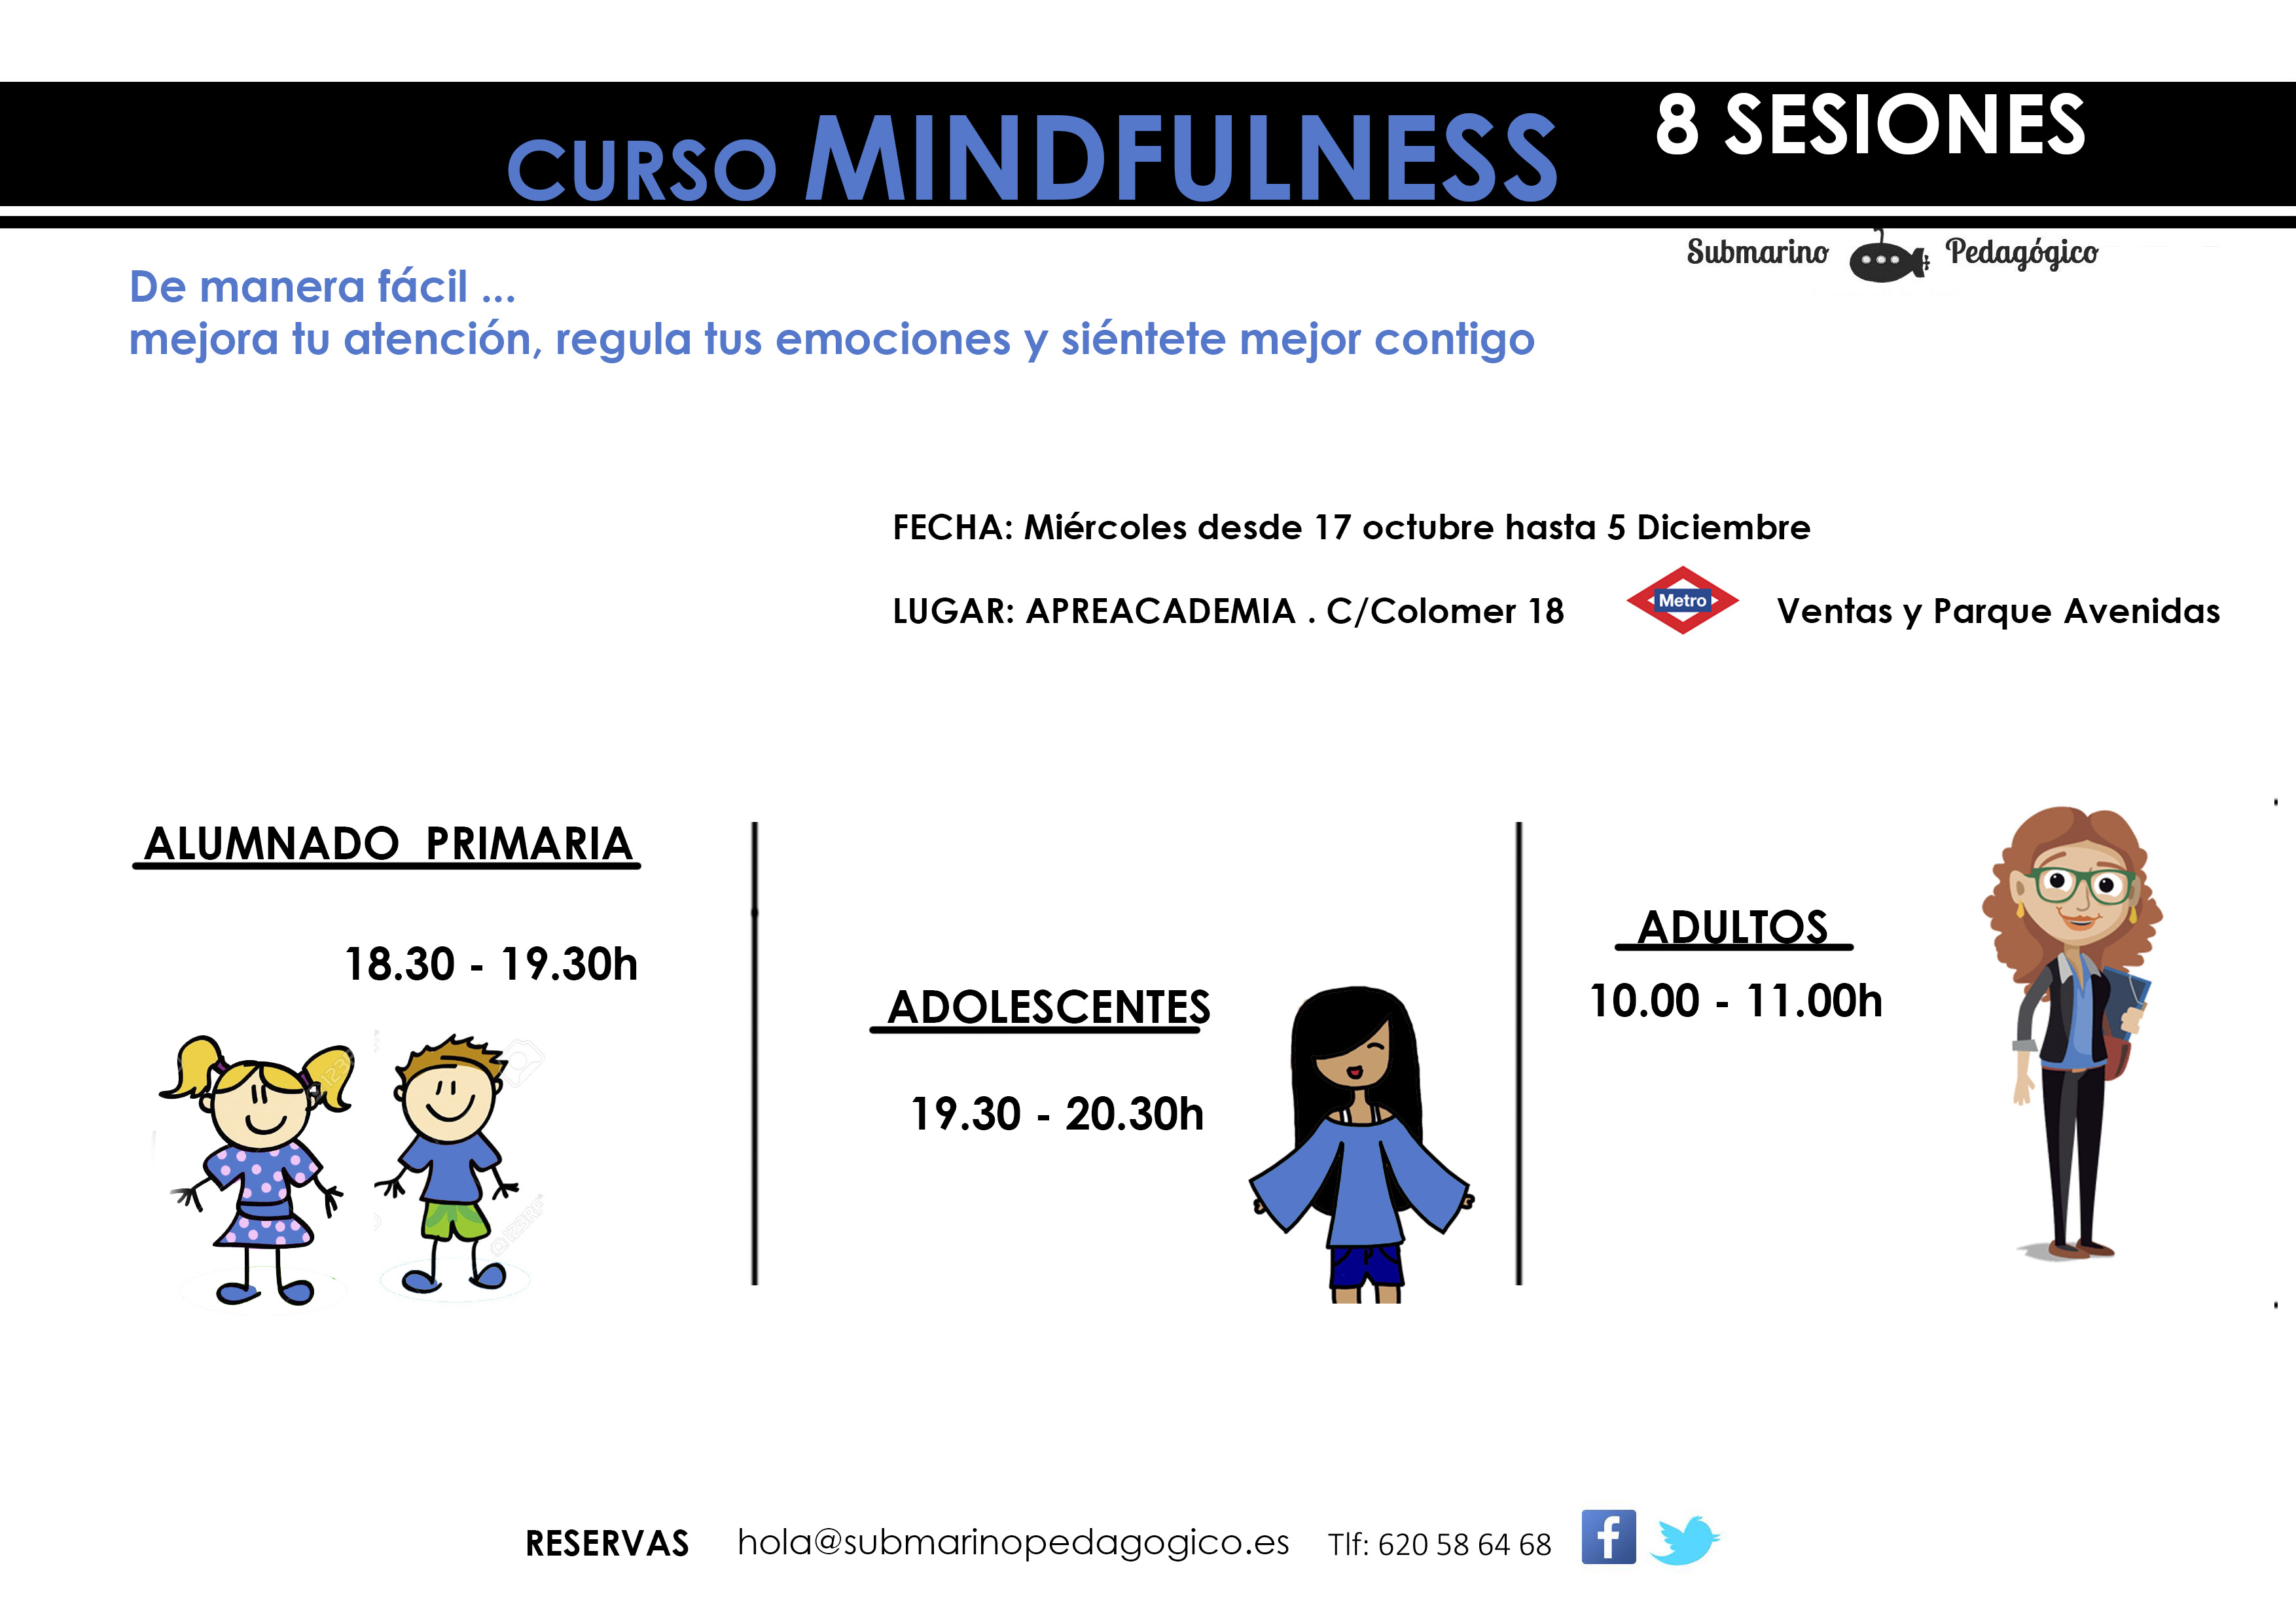 Mindfulness niños adolescentes madrid